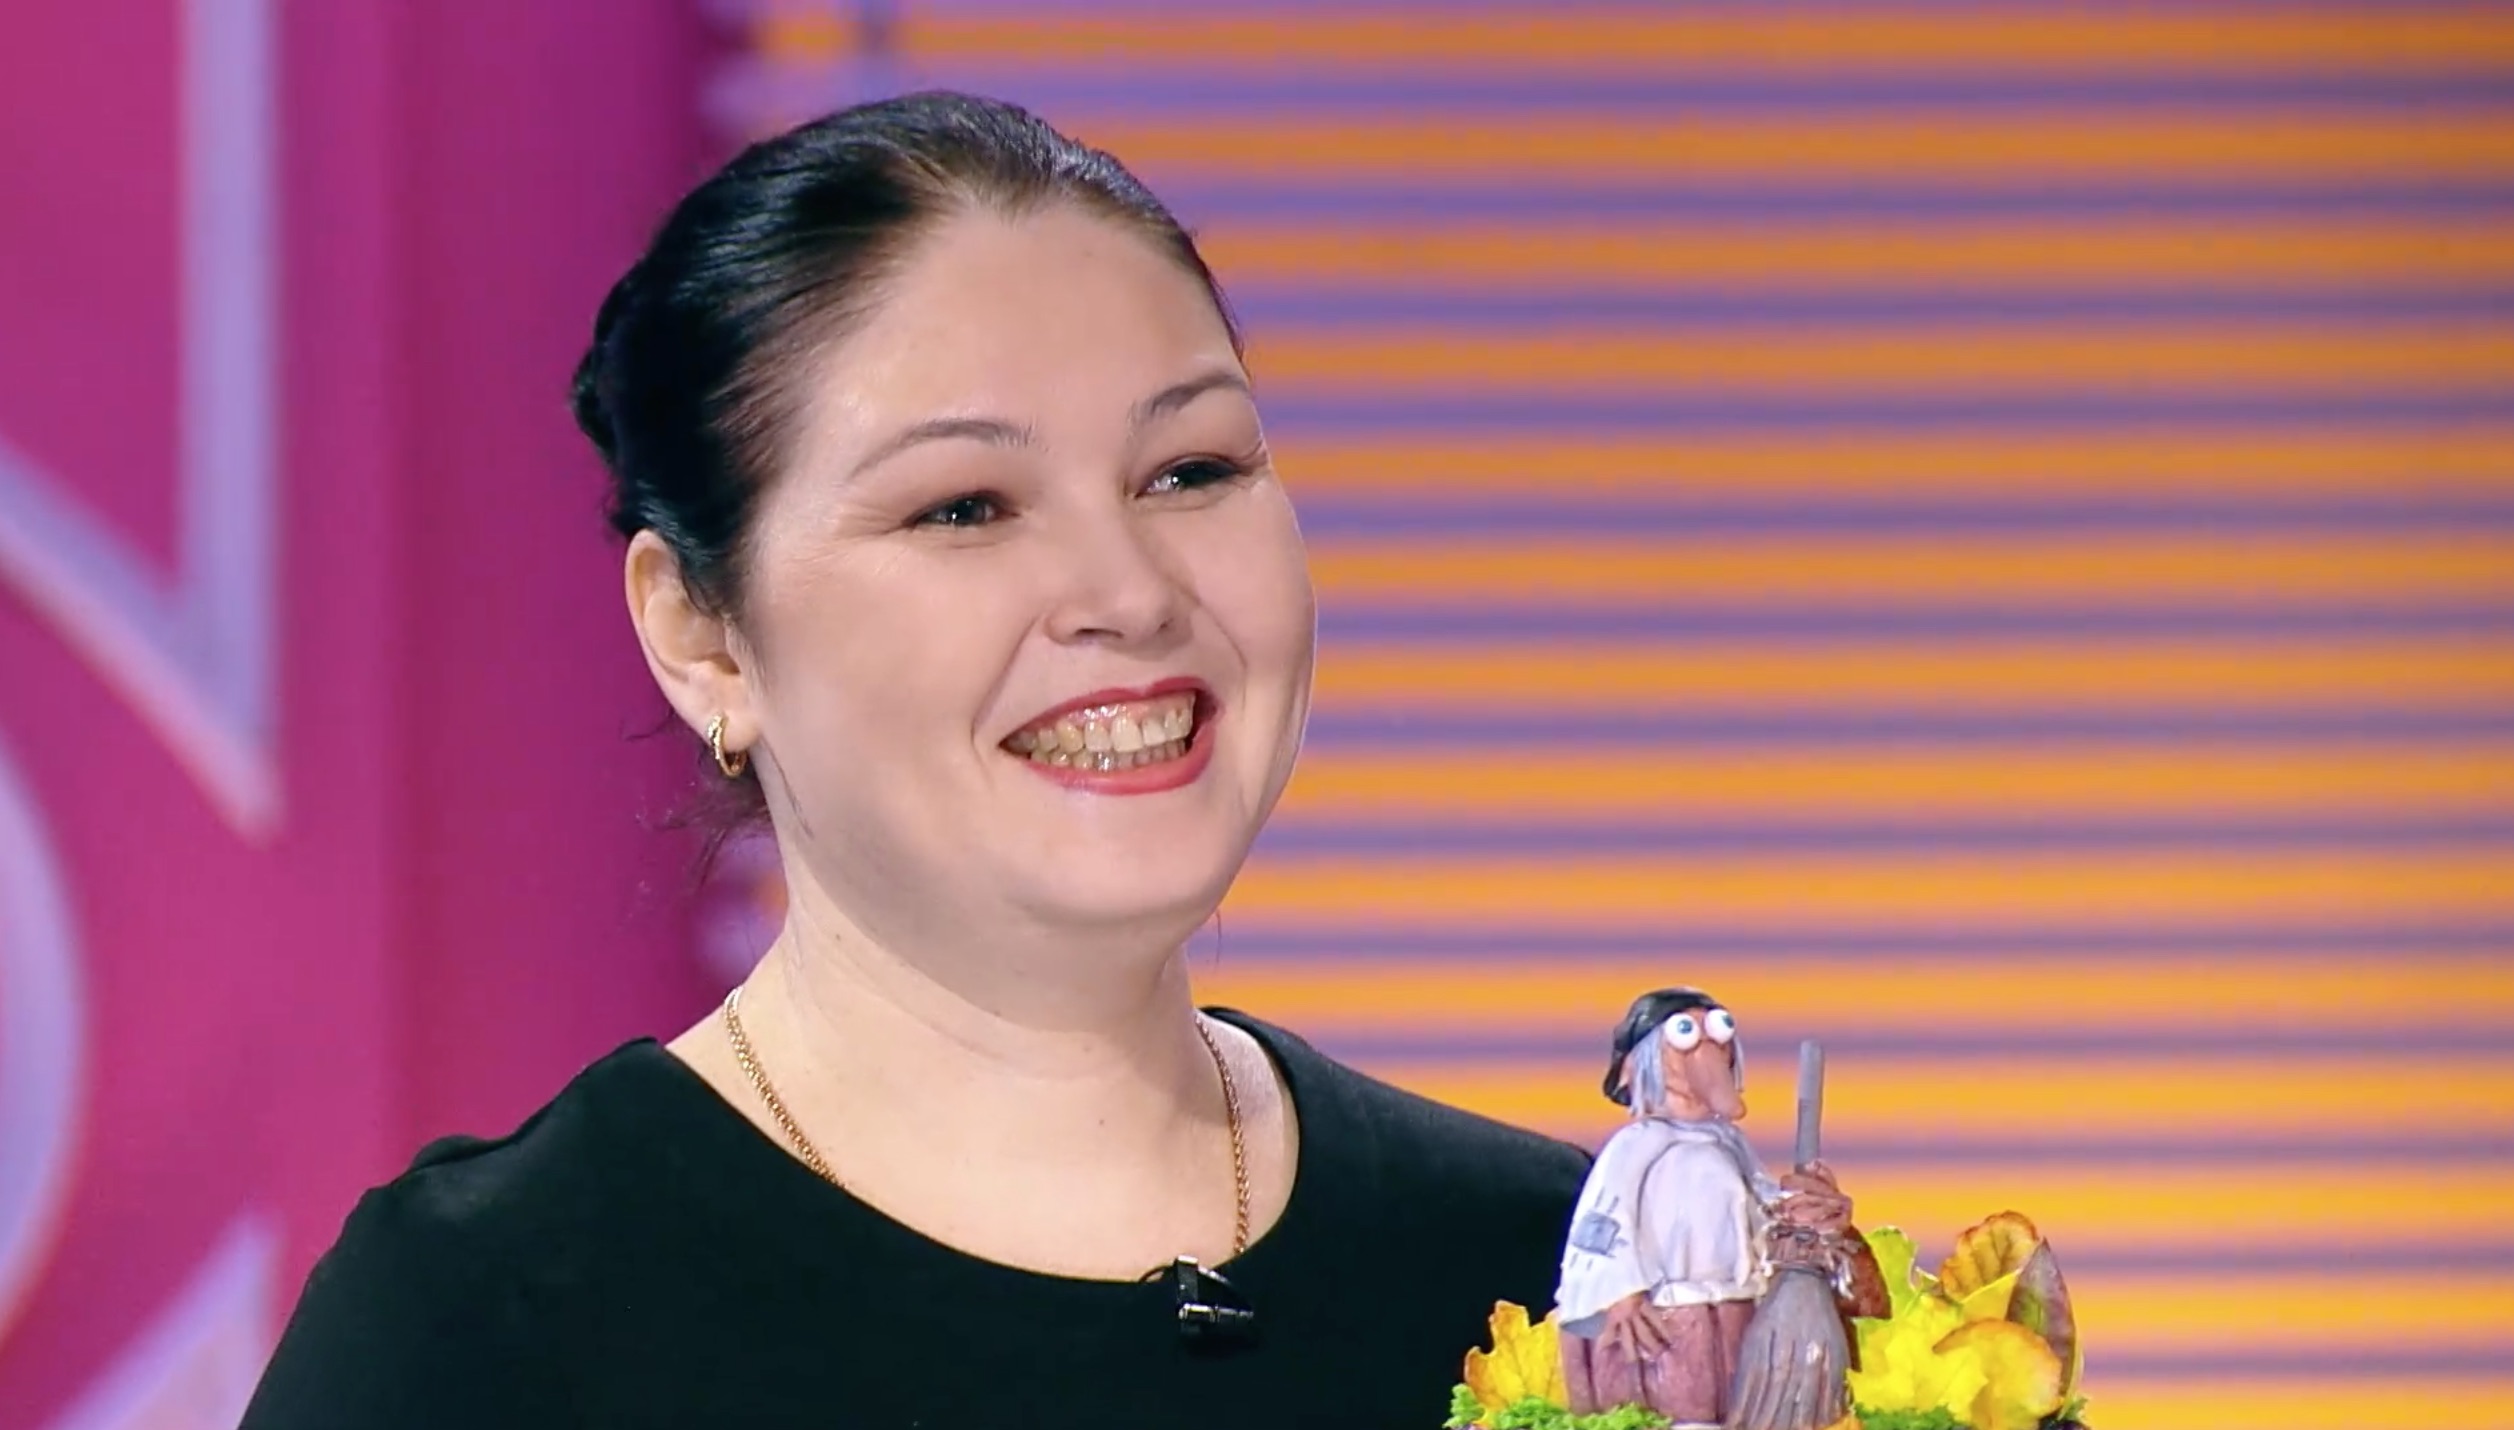 Владимирский кондитер может выиграть миллион рублей в шоу «Кондитер». В качестве сладкого проекта она представила торт с Бабой Ягой.